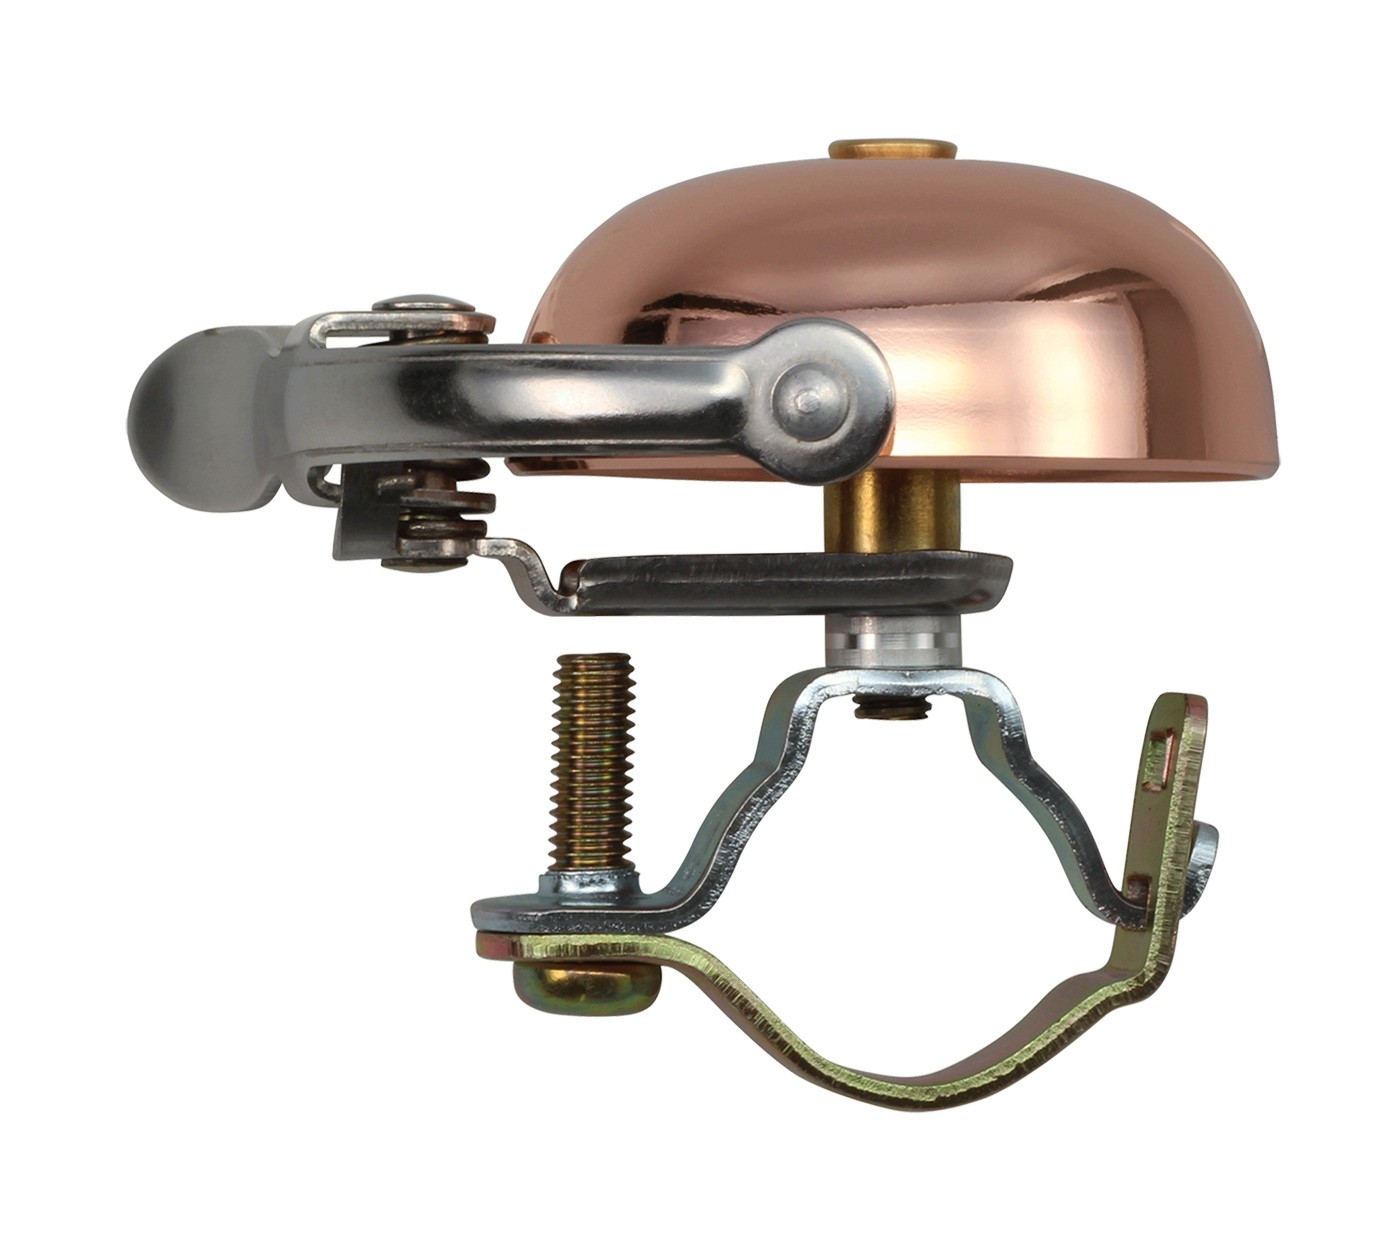 Crane Bell Co. Suzu Mini Klingel Glocke Retro kupfer copper Steel Band Mount